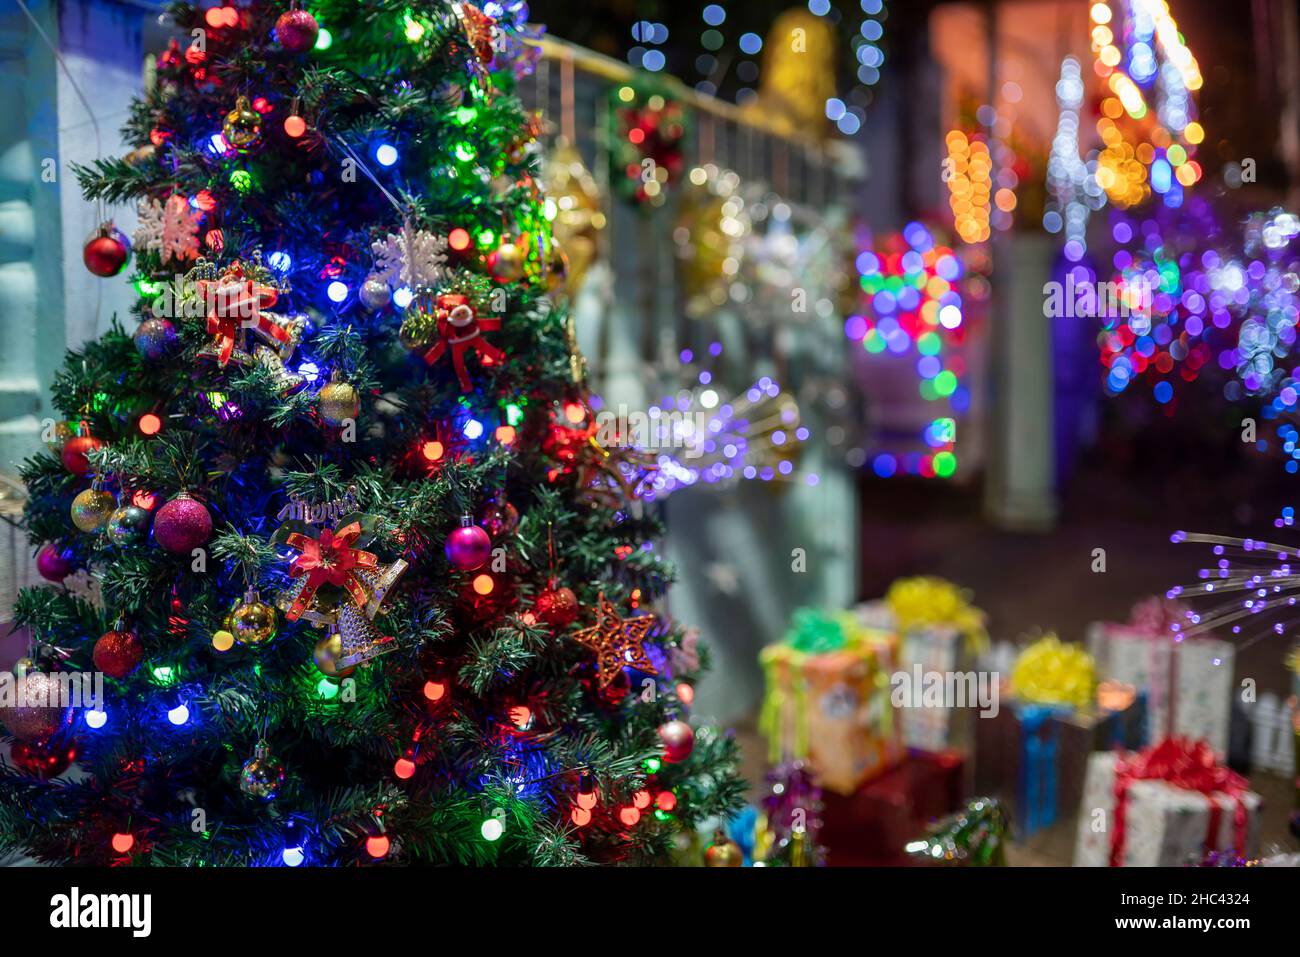 Christmas tree and bokeh lighting blurred Stock Photo